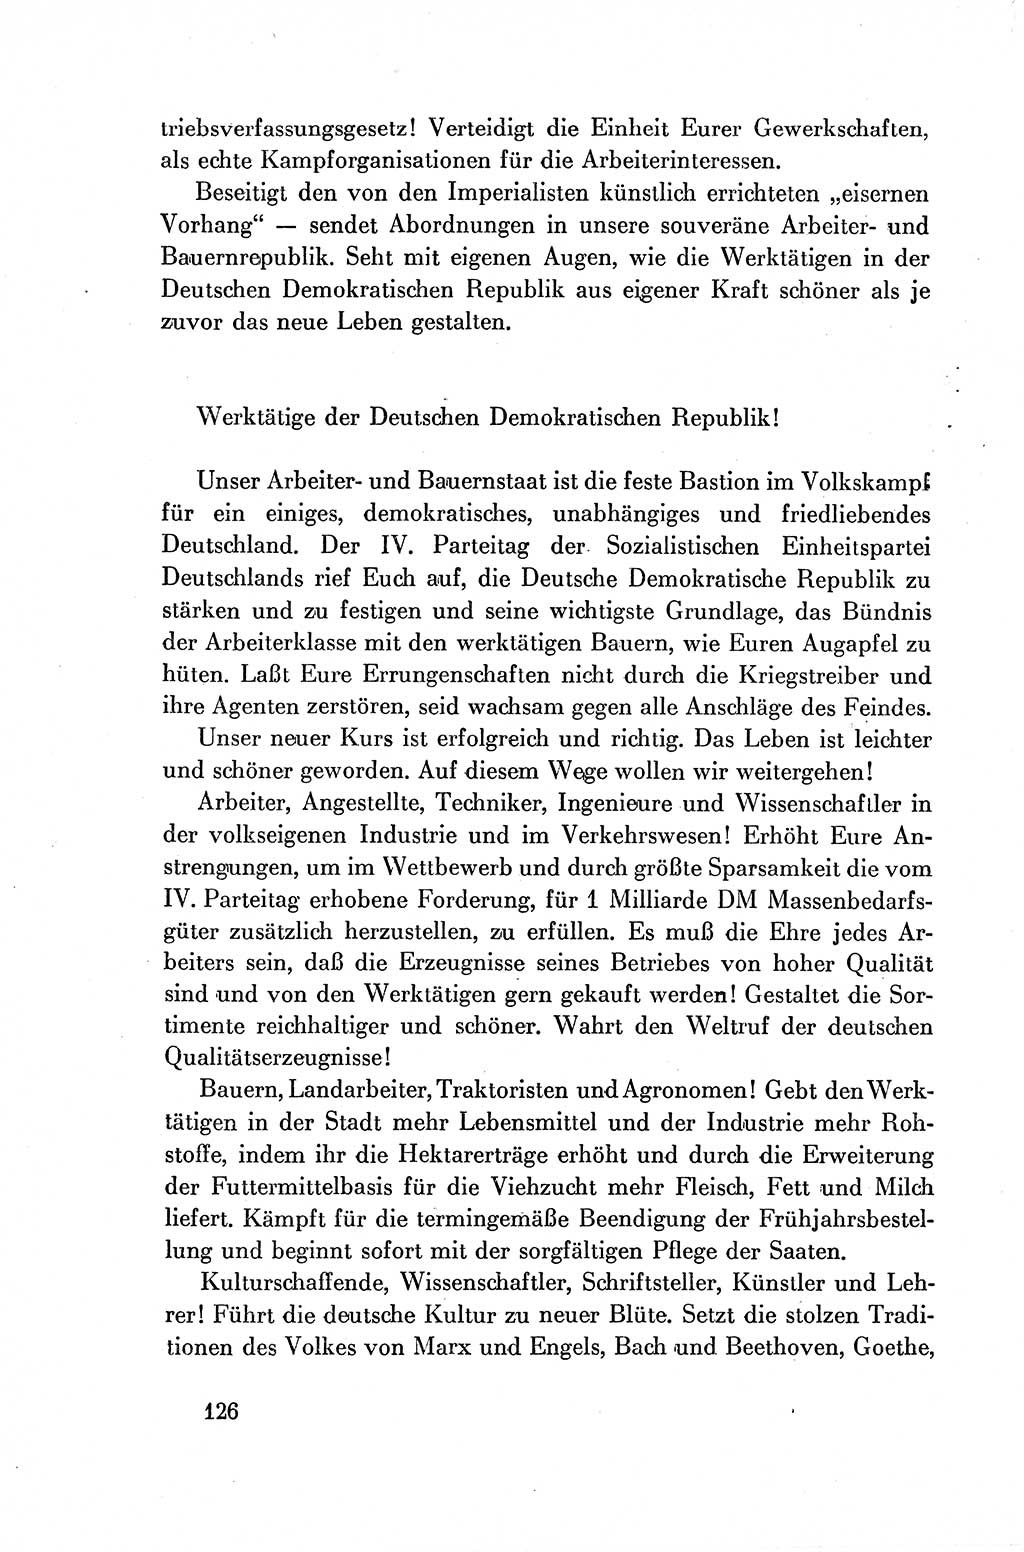 Dokumente der Sozialistischen Einheitspartei Deutschlands (SED) [Deutsche Demokratische Republik (DDR)] 1954-1955, Seite 126 (Dok. SED DDR 1954-1955, S. 126)